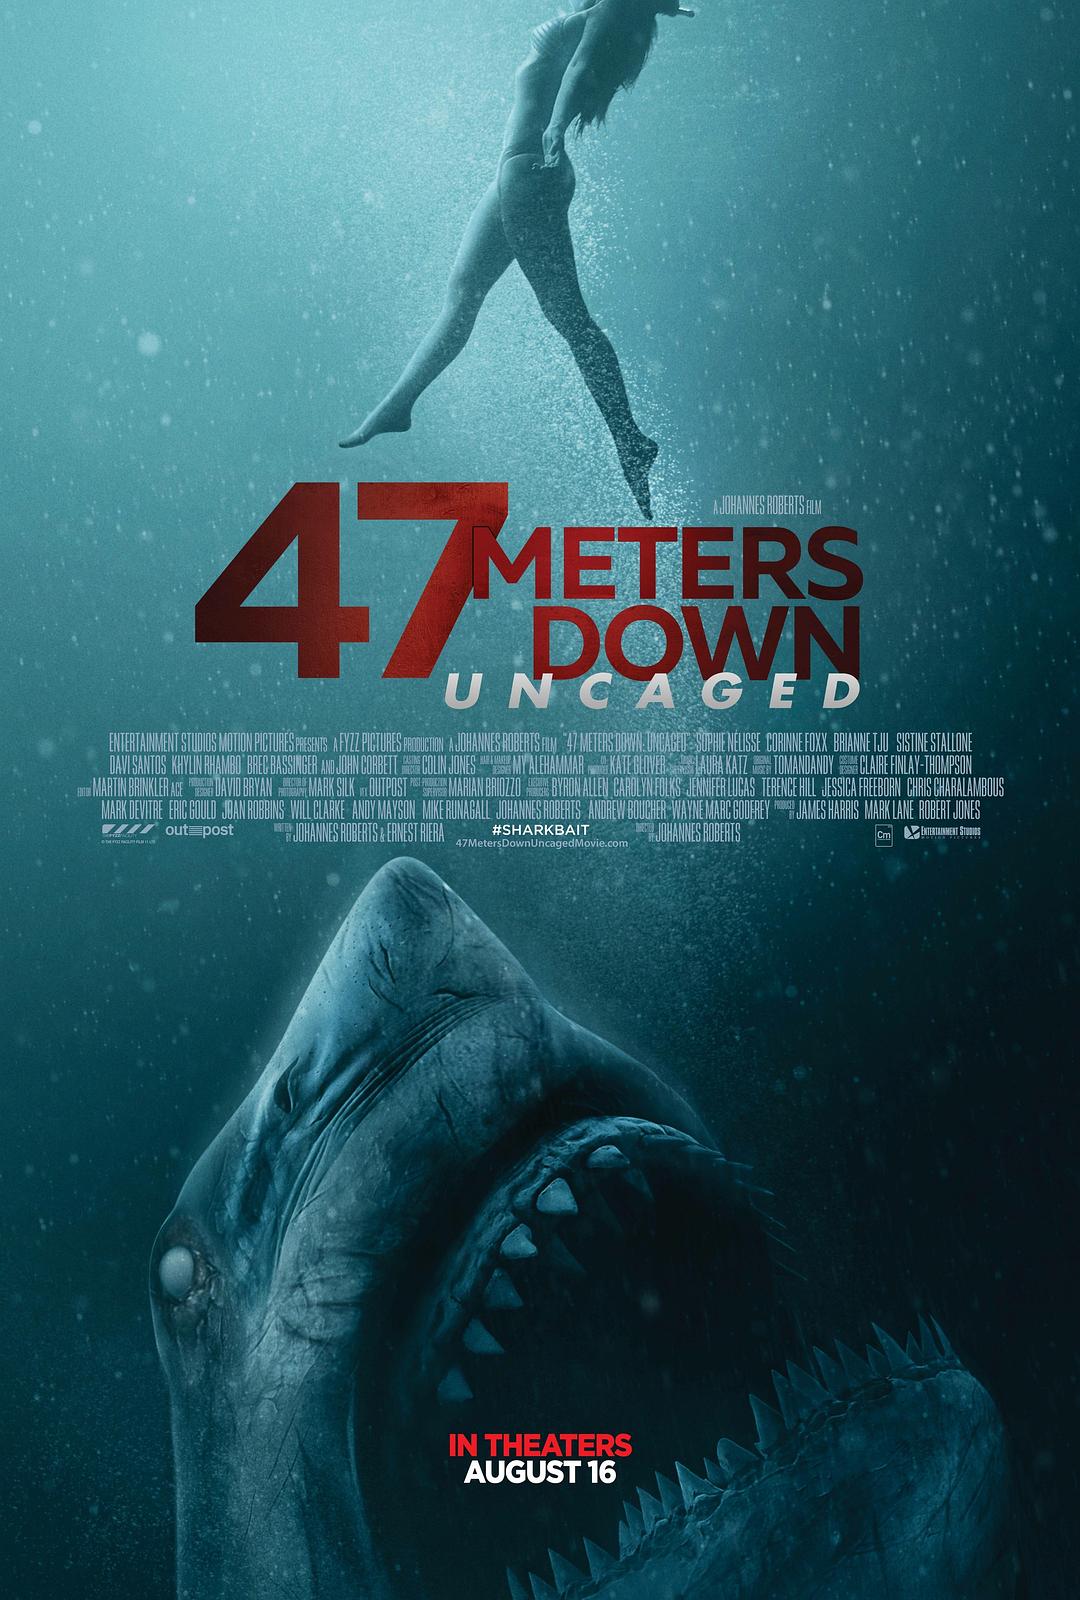 鲨海逃生 47.Meters.Down.Uncaged.2019.1080p.BluRay.AVC.DTS-HD.MA.5.1-DiSRUPTION 22.22GB-1.png